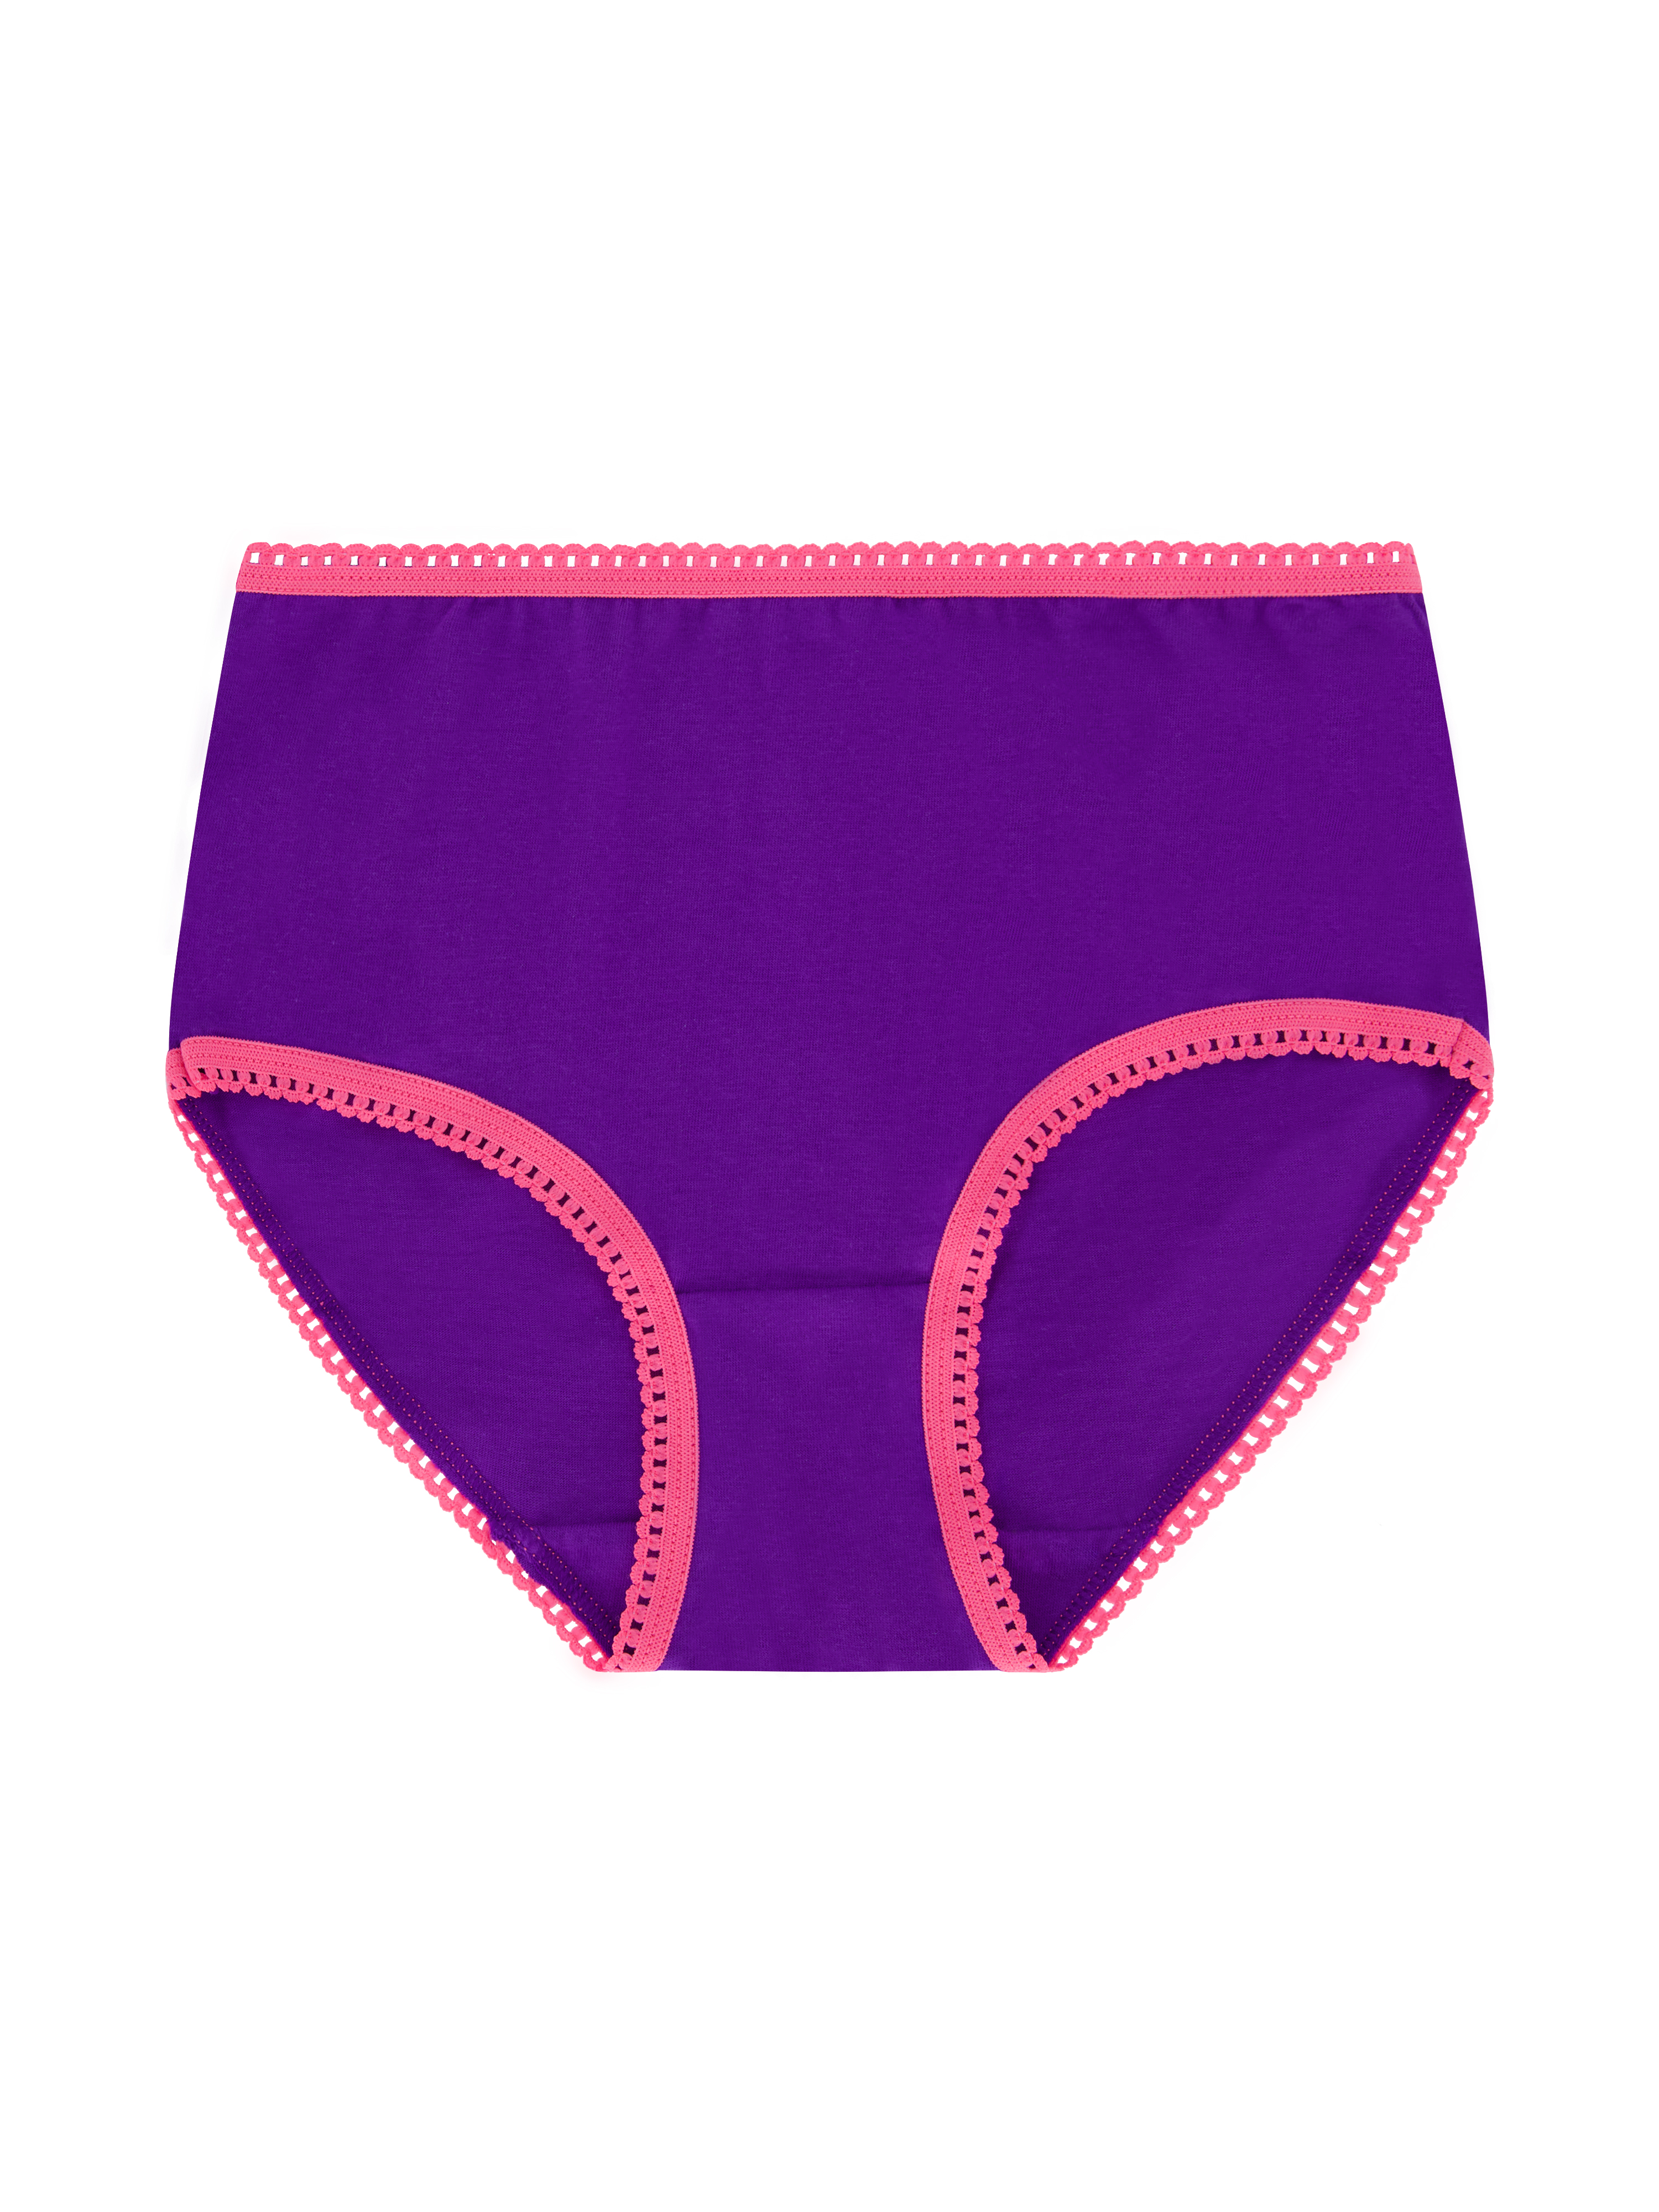 Wonder Nation Girls Brief Underwear 14-Pack, Sizes 4-18 - image 8 of 17